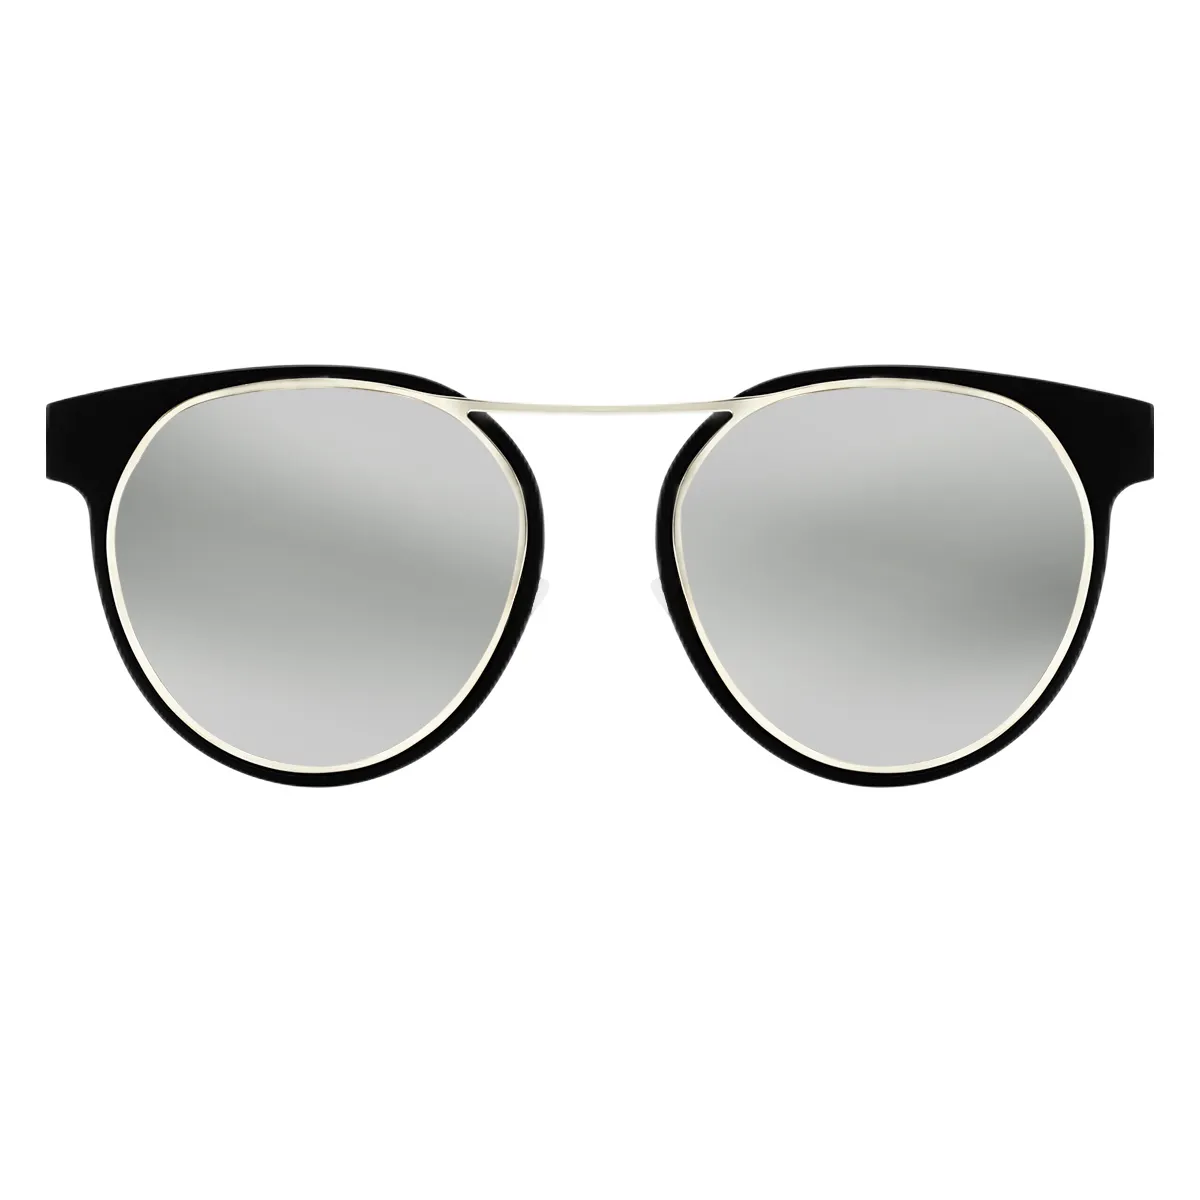 Fashion Browline Silver  Sunglasses for Women & Men